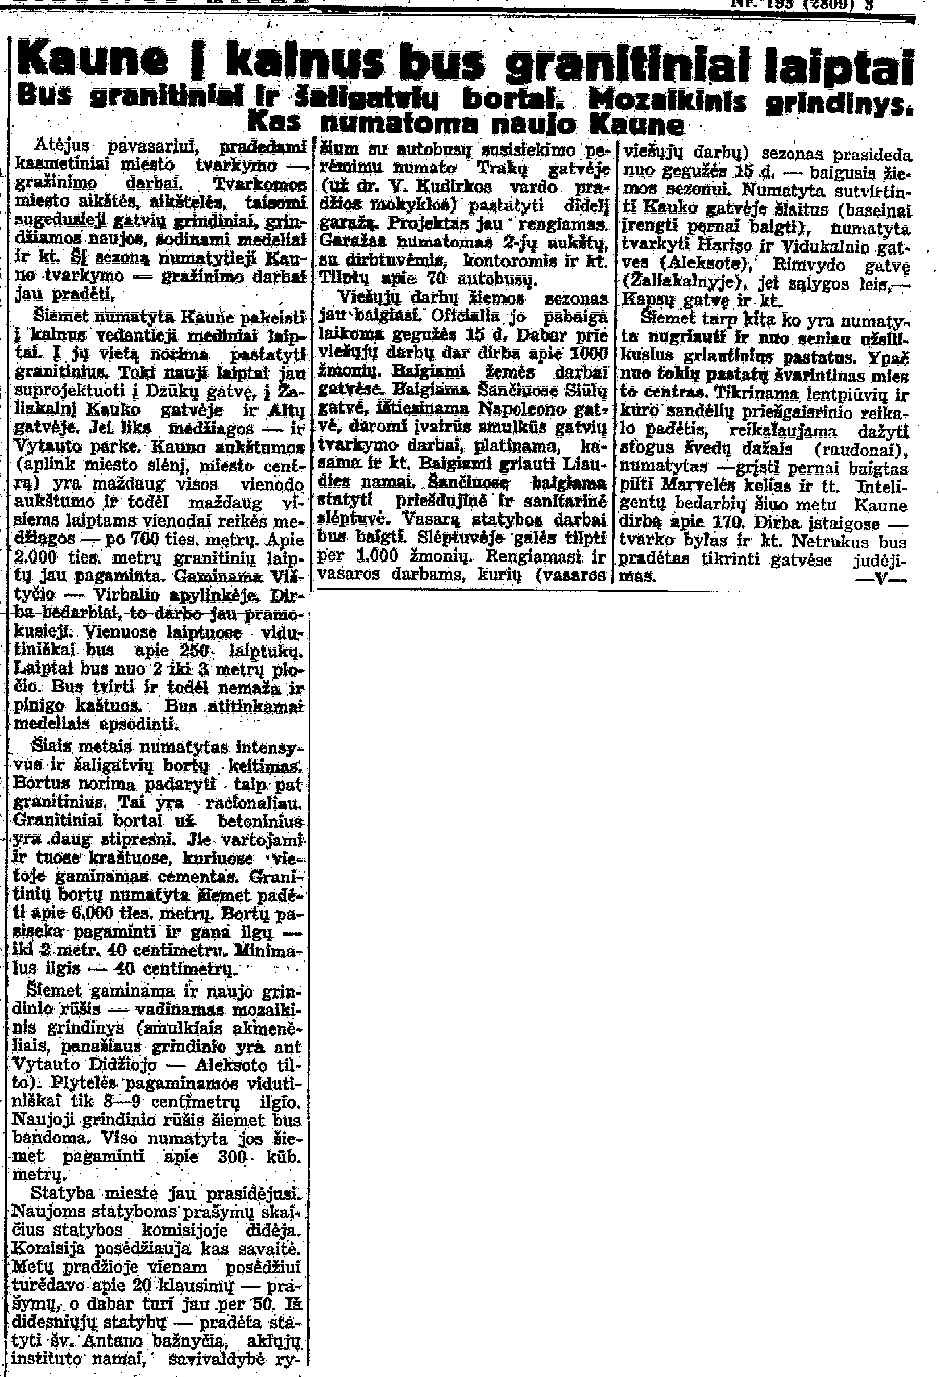 LA, 1936.04.28, p.3 - Kaune į kalnus bus granitiniai laiptai